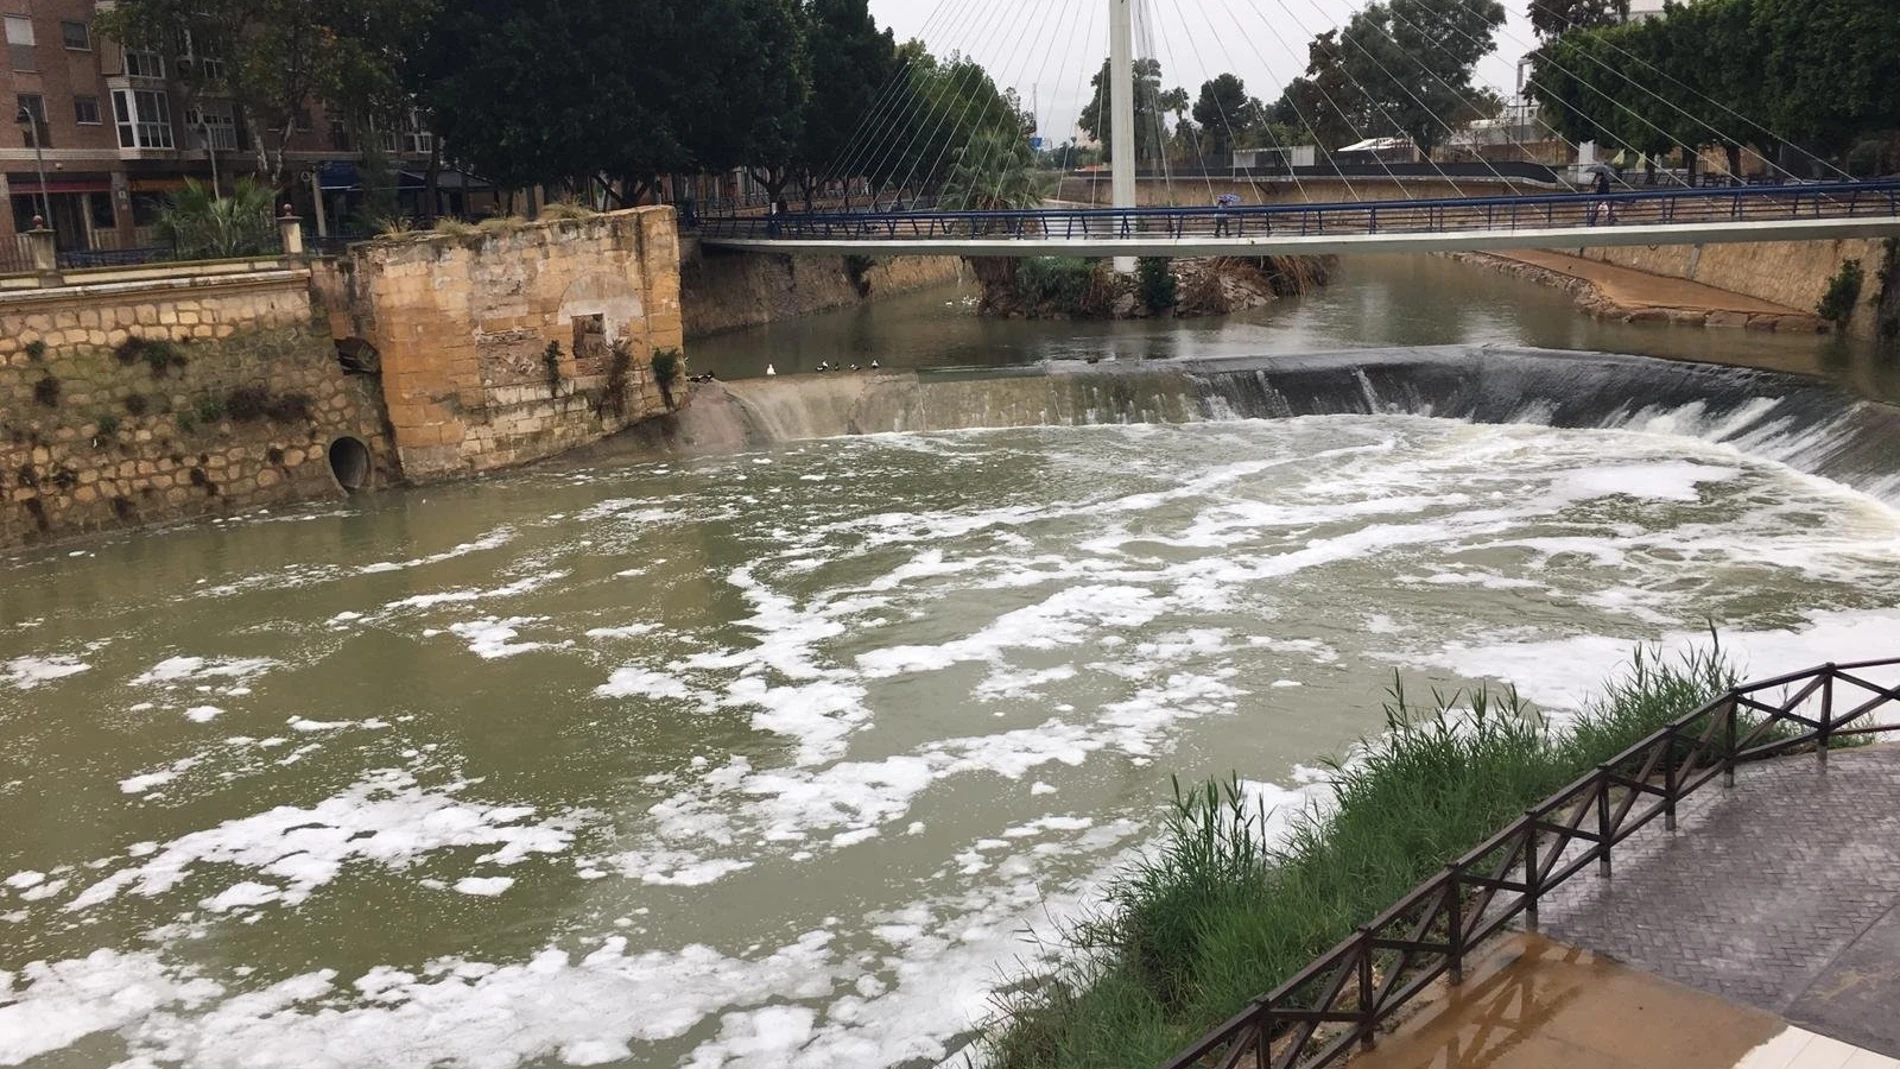 Huermur denuncia un nuevo episodio de espumas en el río segura